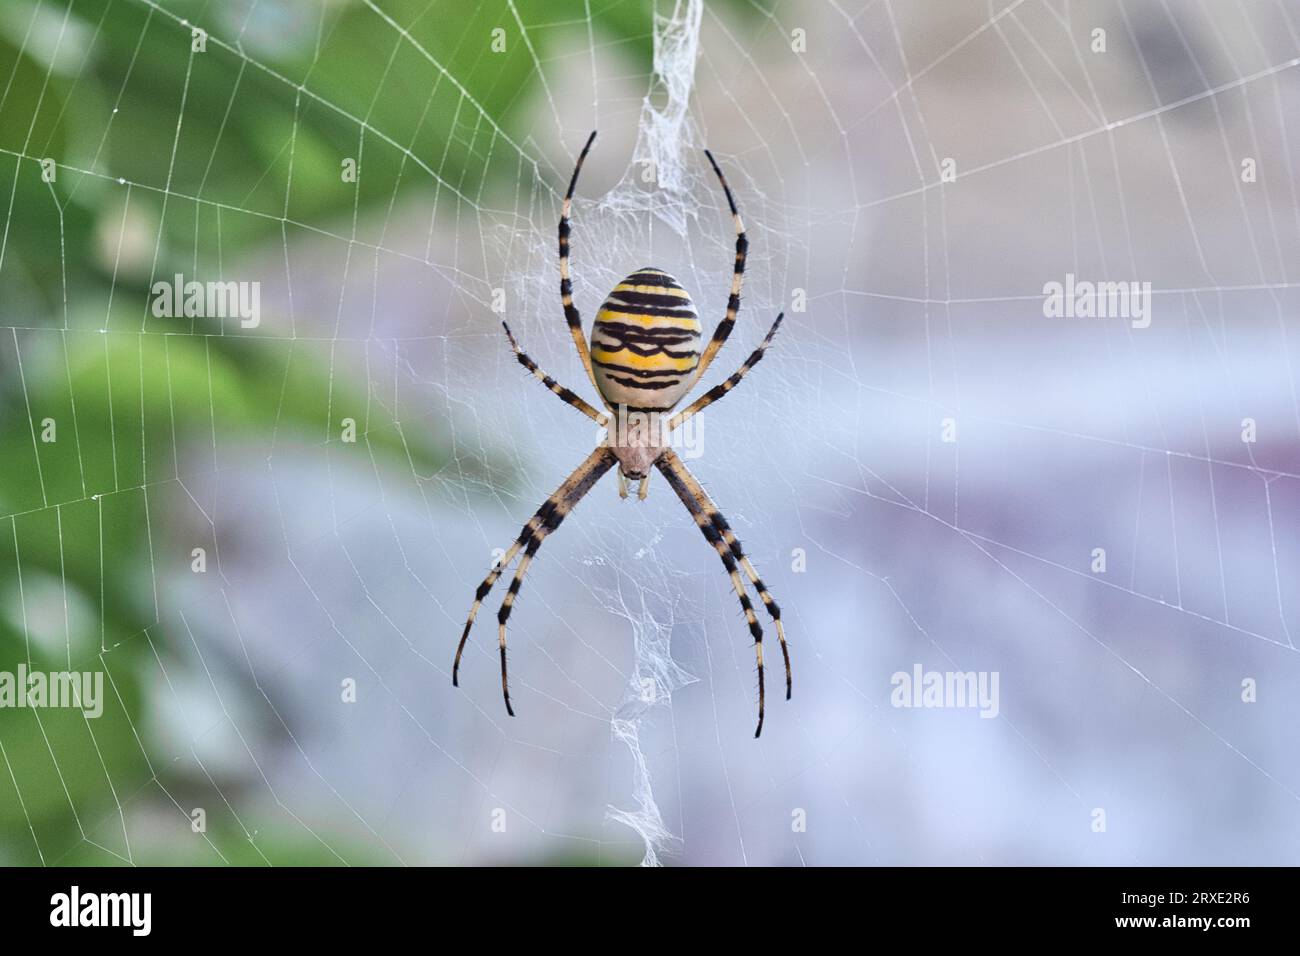 Große und farbenfrohe europäische Wasp Spider, weiß mit schwarzen und gelben Streifen, liegt mitten in ihrem feinen seidenartigen Netz. Acht Haare Stockfoto